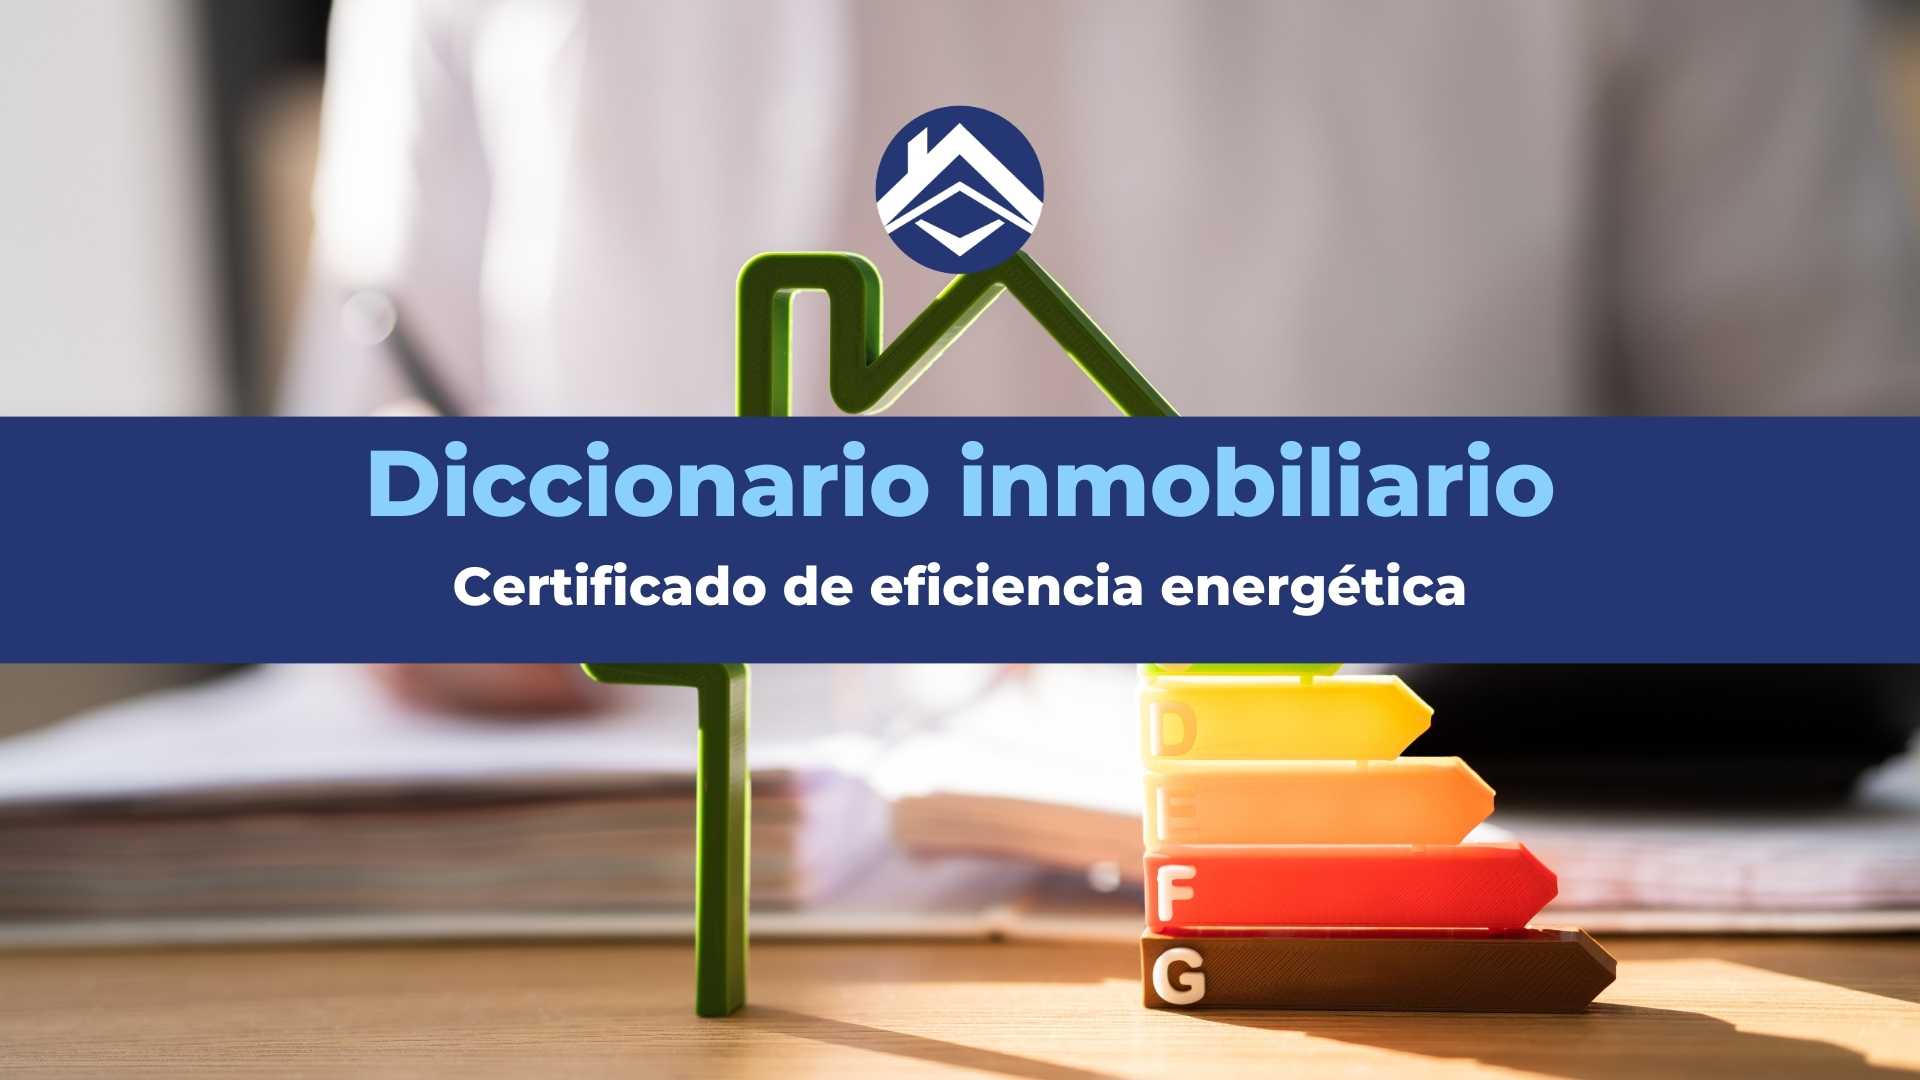 Certificado de eficiencia energética: Significado y usos